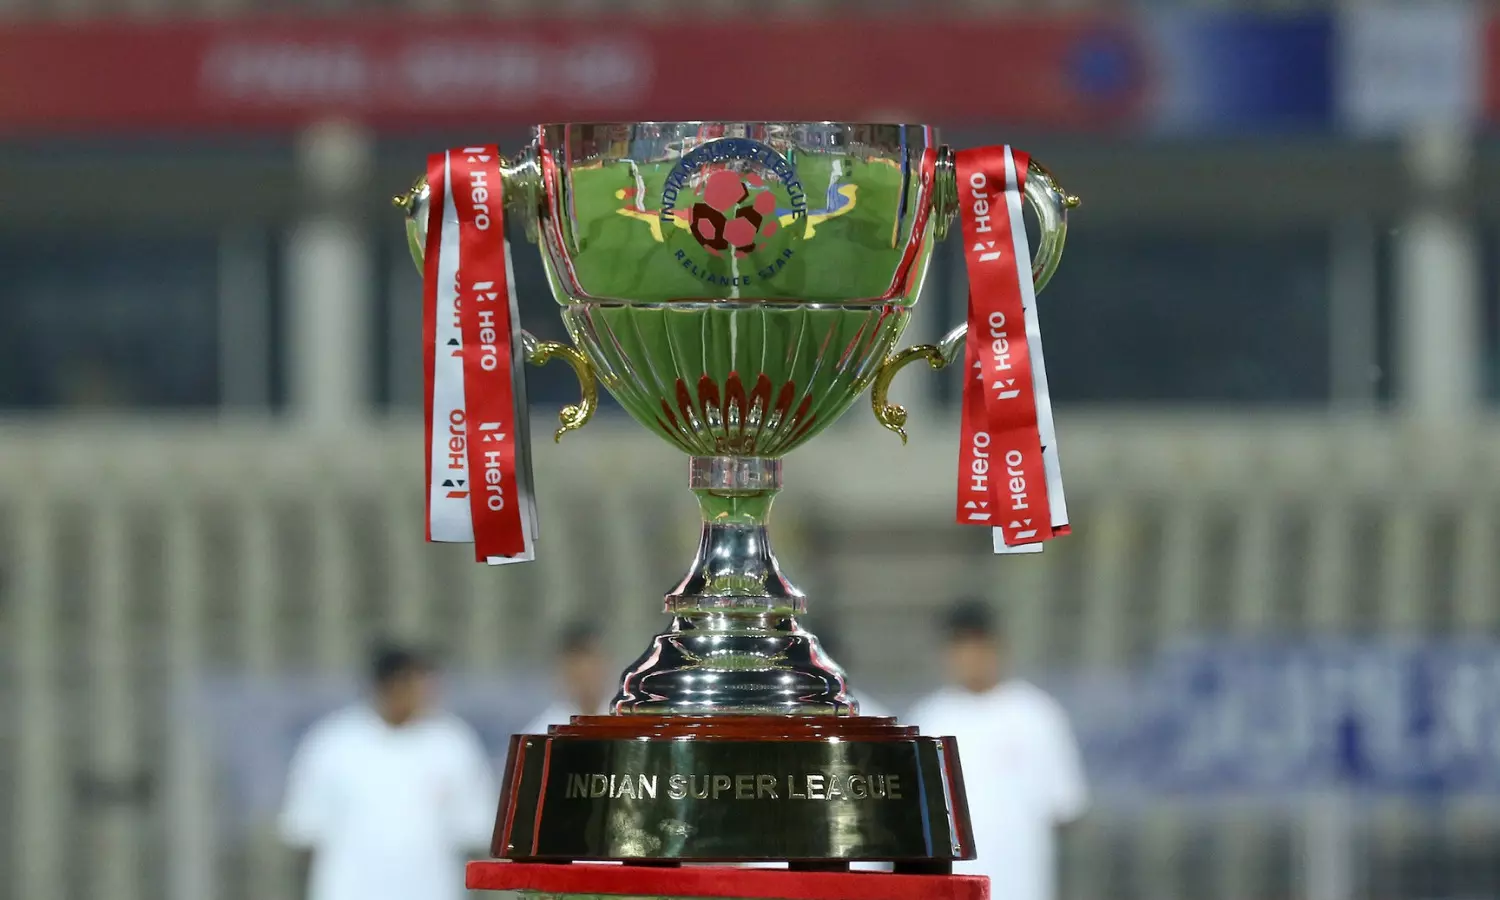 Indian super league